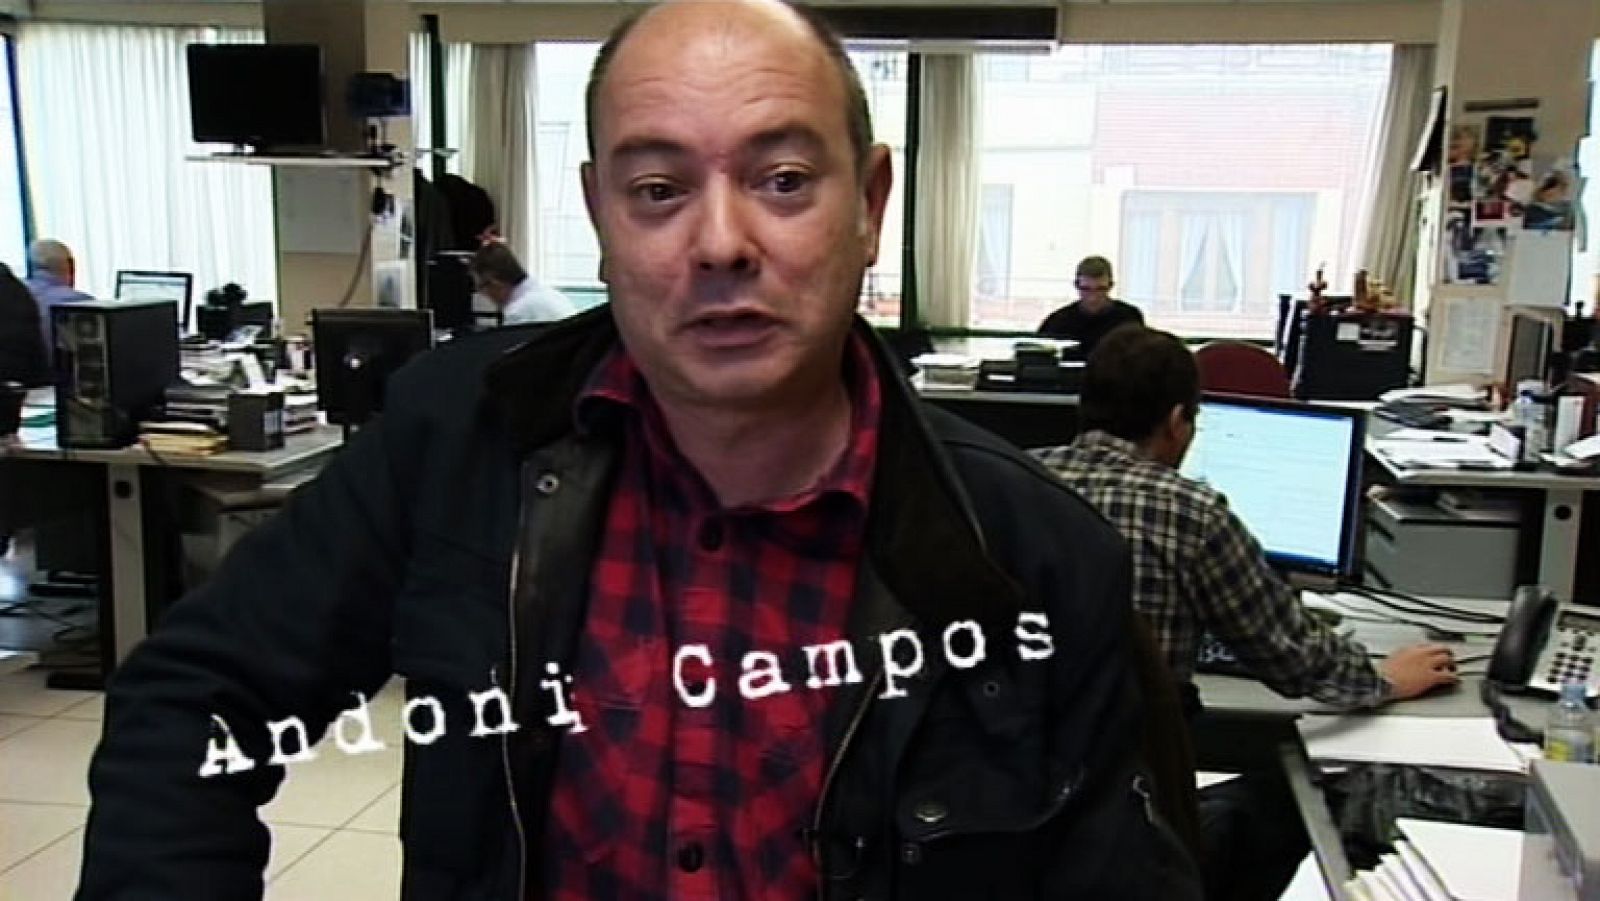 El ojo en la noticia - Mikel Arregui visto por Andoni Campos